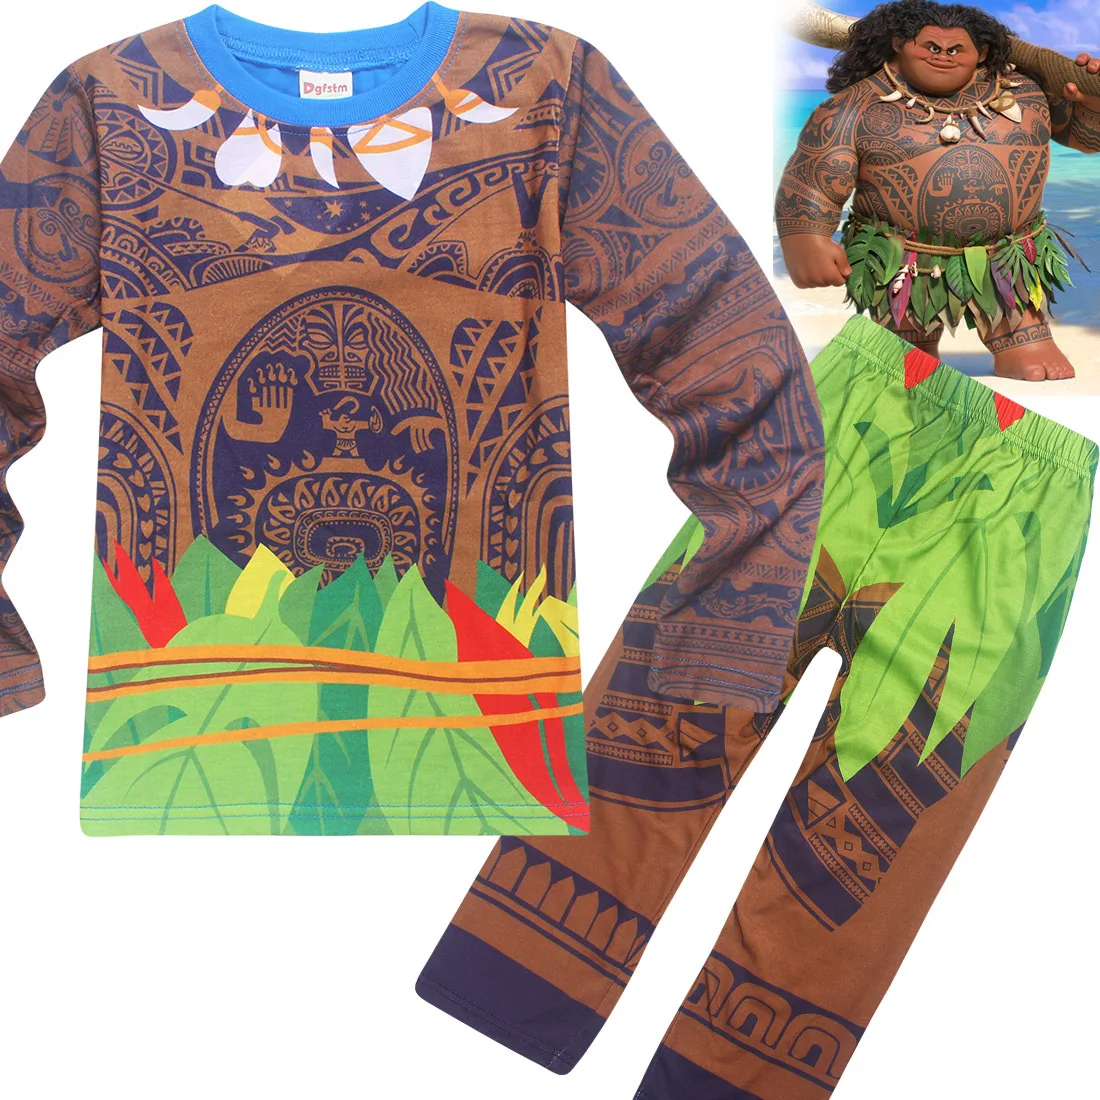 Обувь для мальчиков Моана Мауи костюм Дети пижамы повседневные футболки Футболки и Брюки для девочек комплект из 2 частей Костюмы мальчик